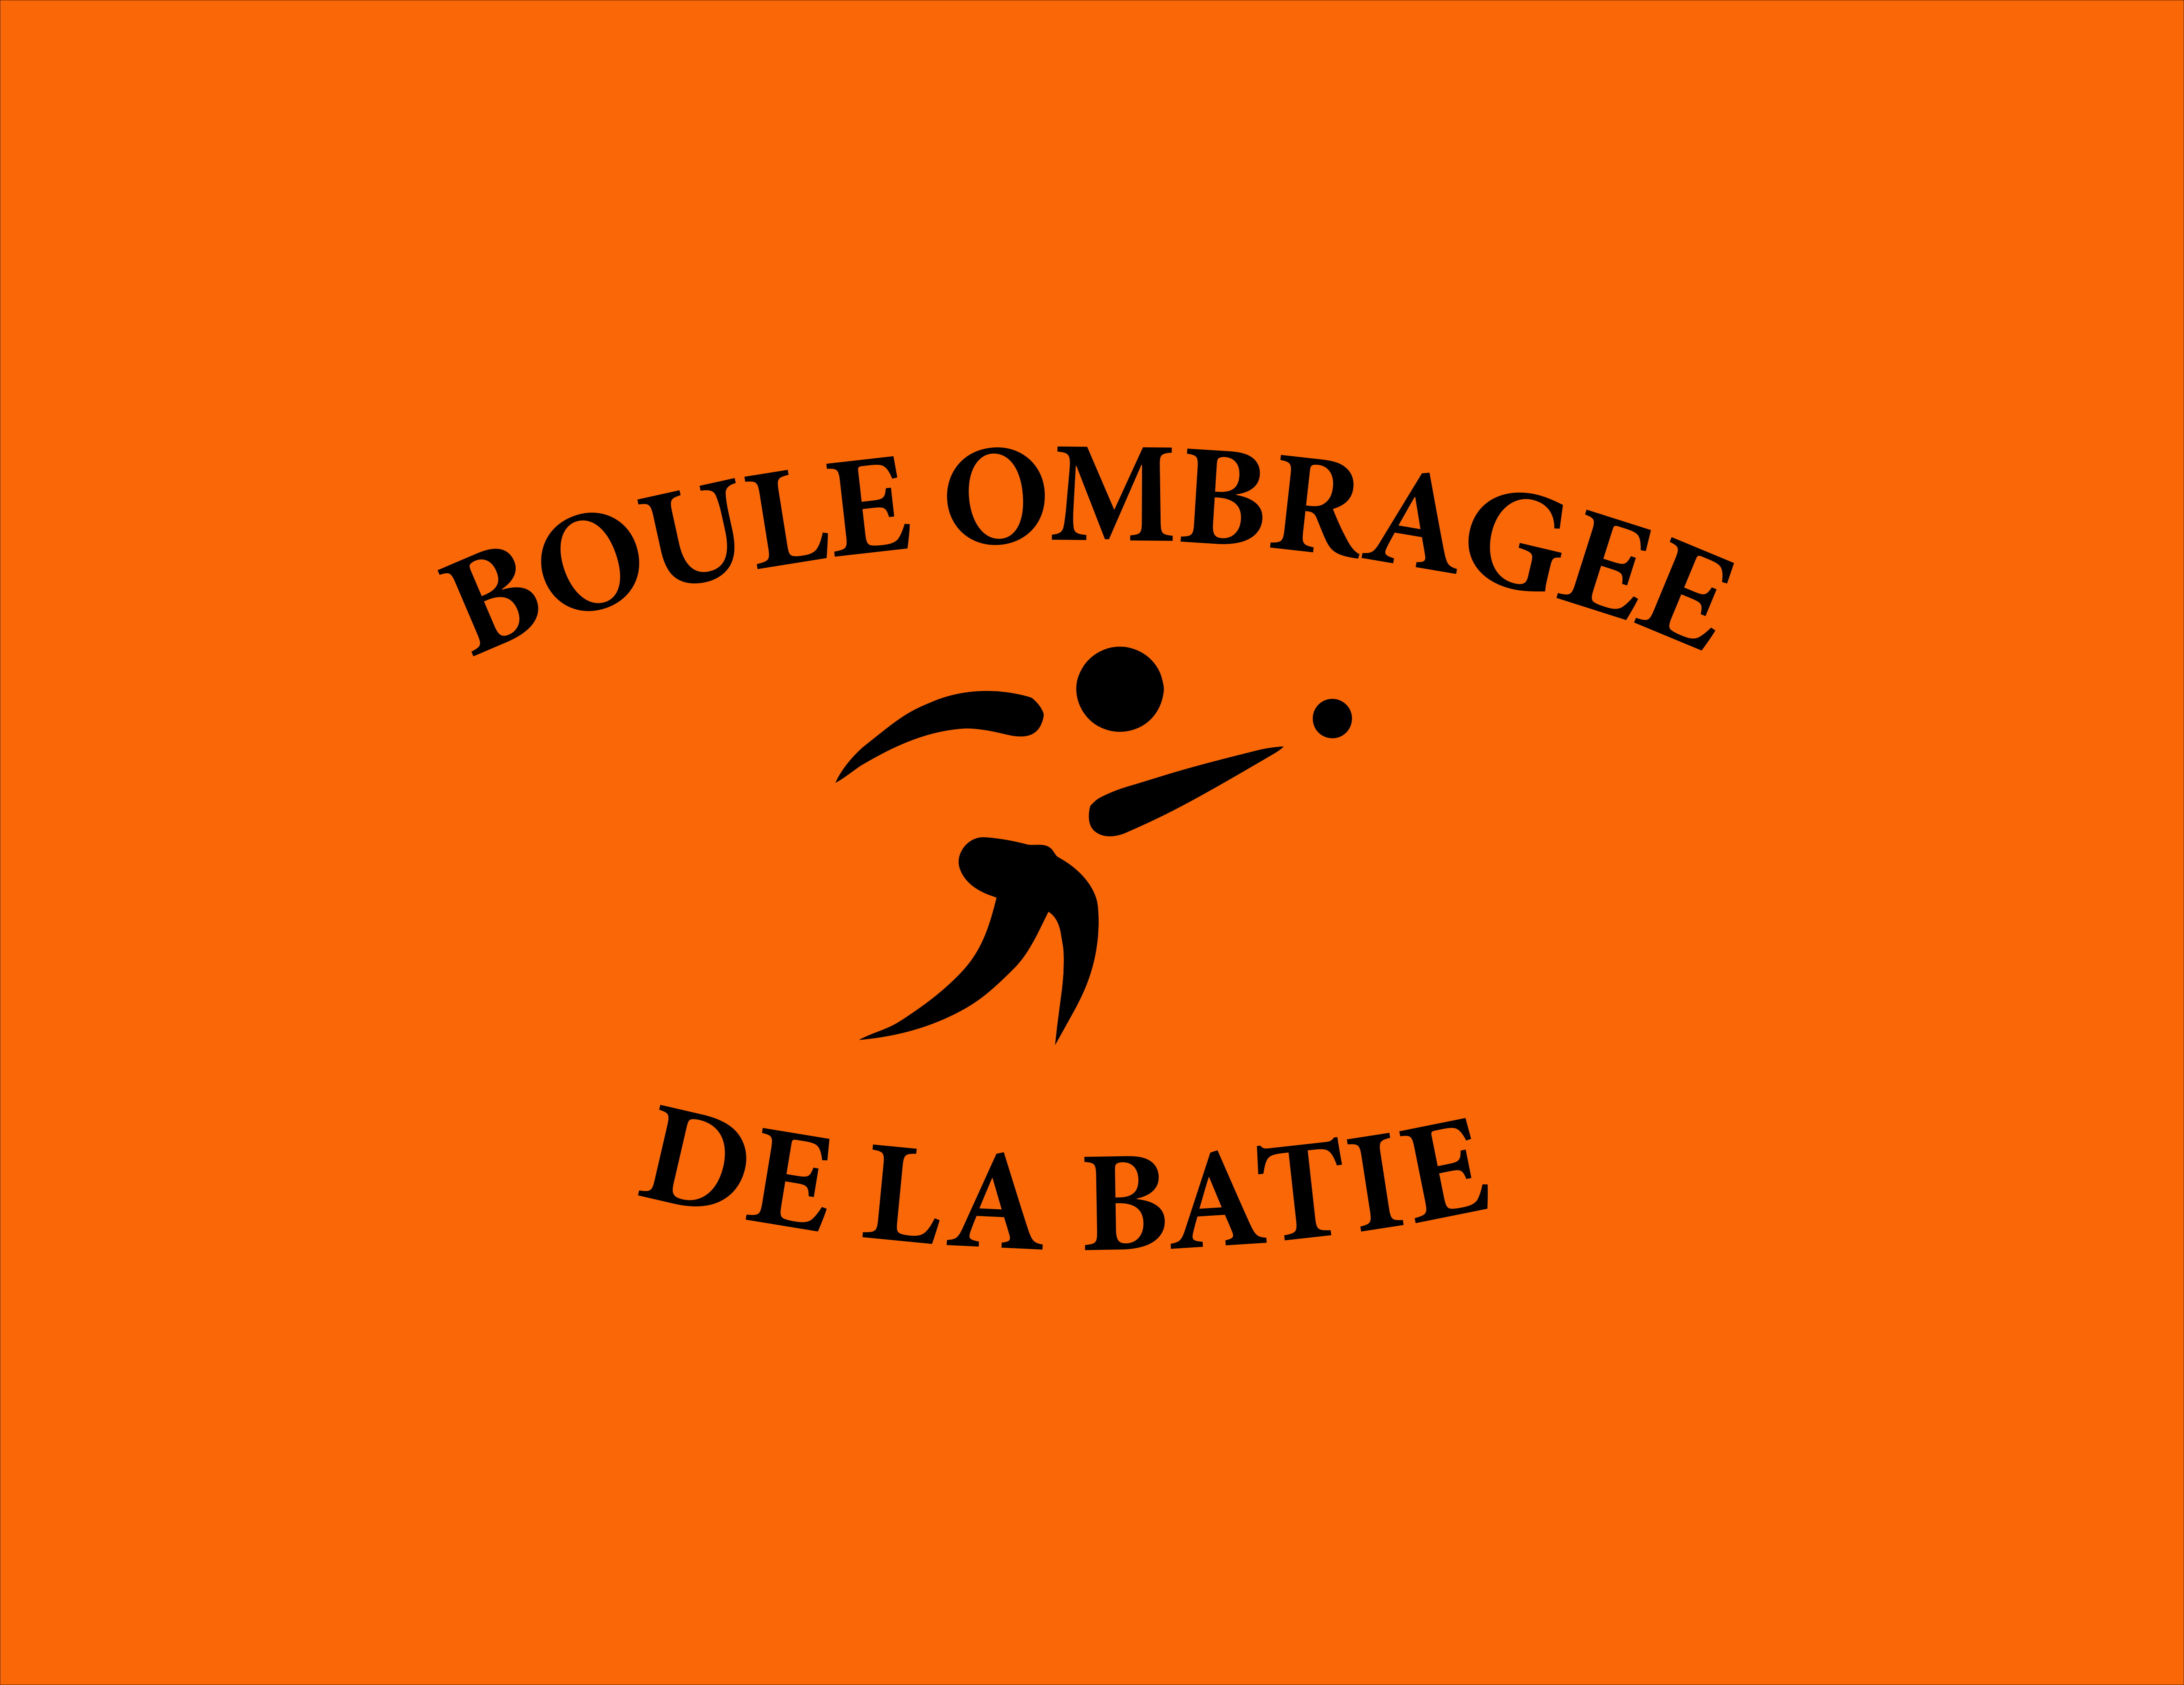 Logo du club de pétanque Boule ombragée de la batie - club à Saint-Étienne - 42000